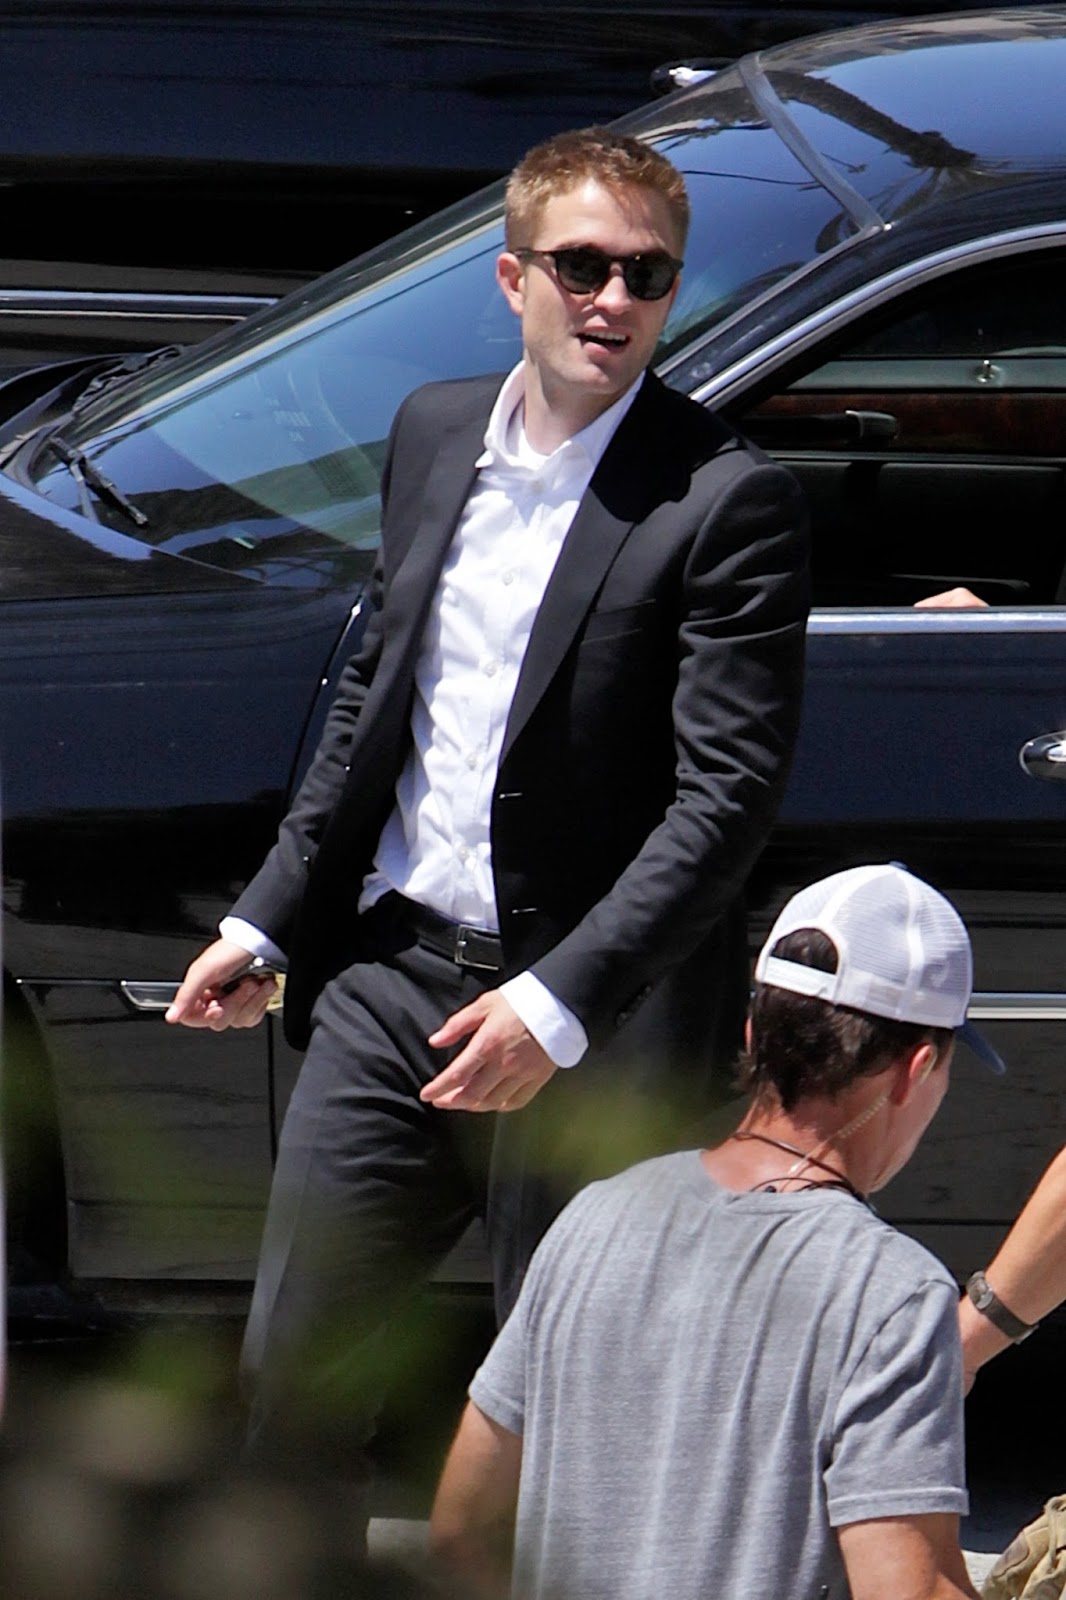 18 Agosto - Nuevas imágenes HQ de Rob en el set de "Map to the Stars" en LA!!! (17 Agosto) PattinsonlifeNEWMTTSLApt2+(12)